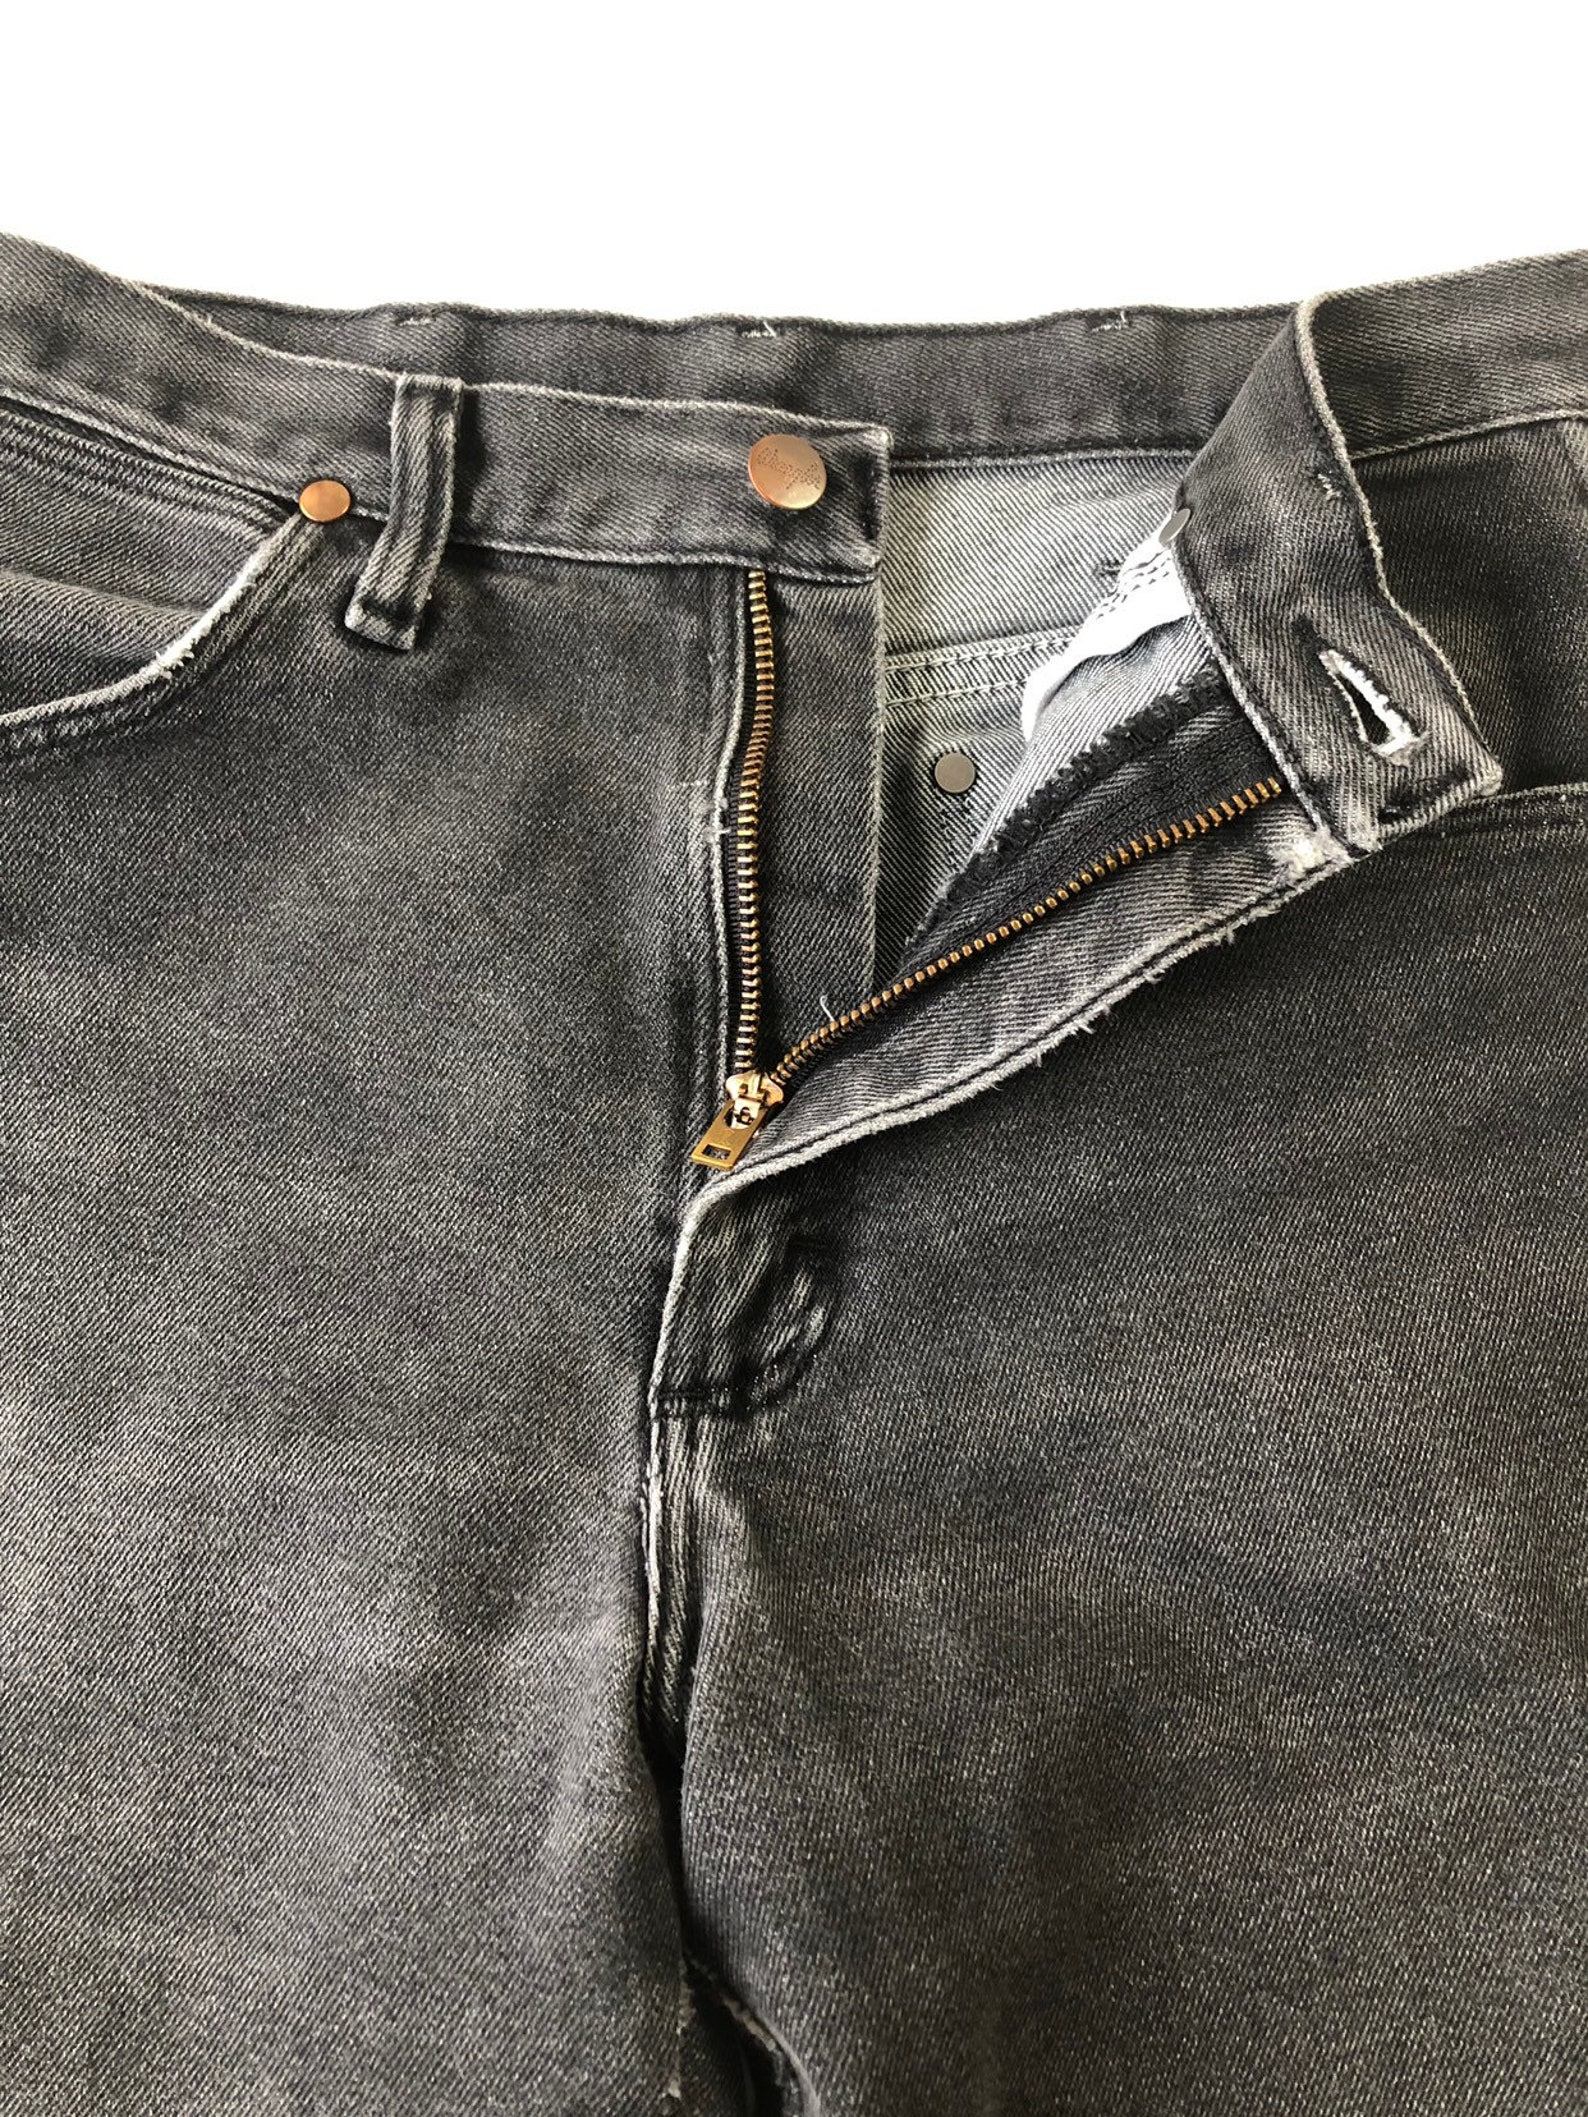 1980s Black Denim Wrangler Jeans 28 Waist - Etsy